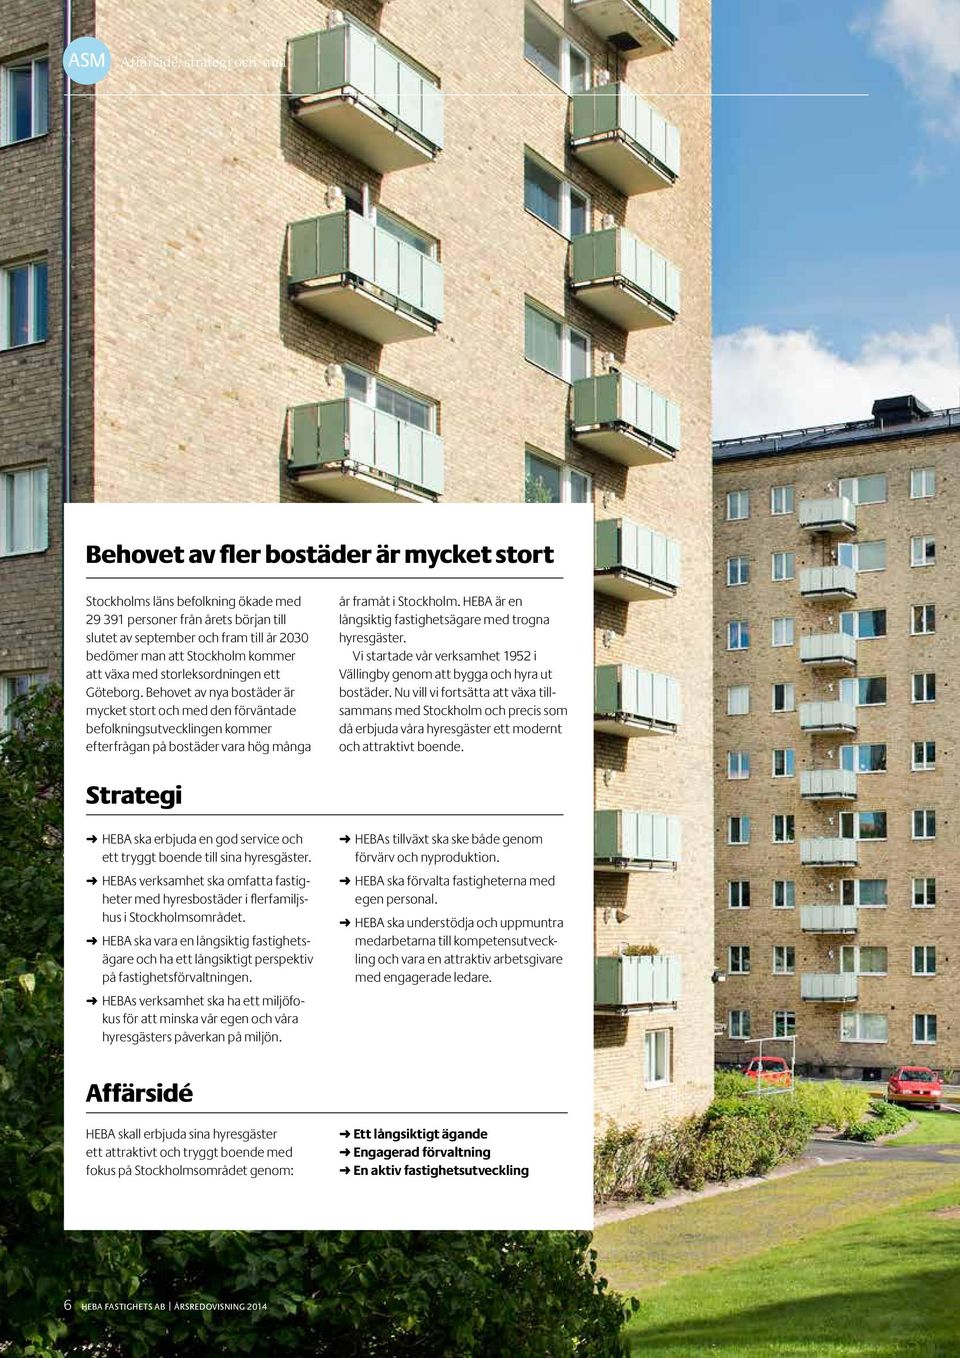 Behovet av nya bostäder är mycket stort och med den förväntade befolkningsutvecklingen kommer efterfrågan på bostäder vara hög många år framåt i Stockholm.